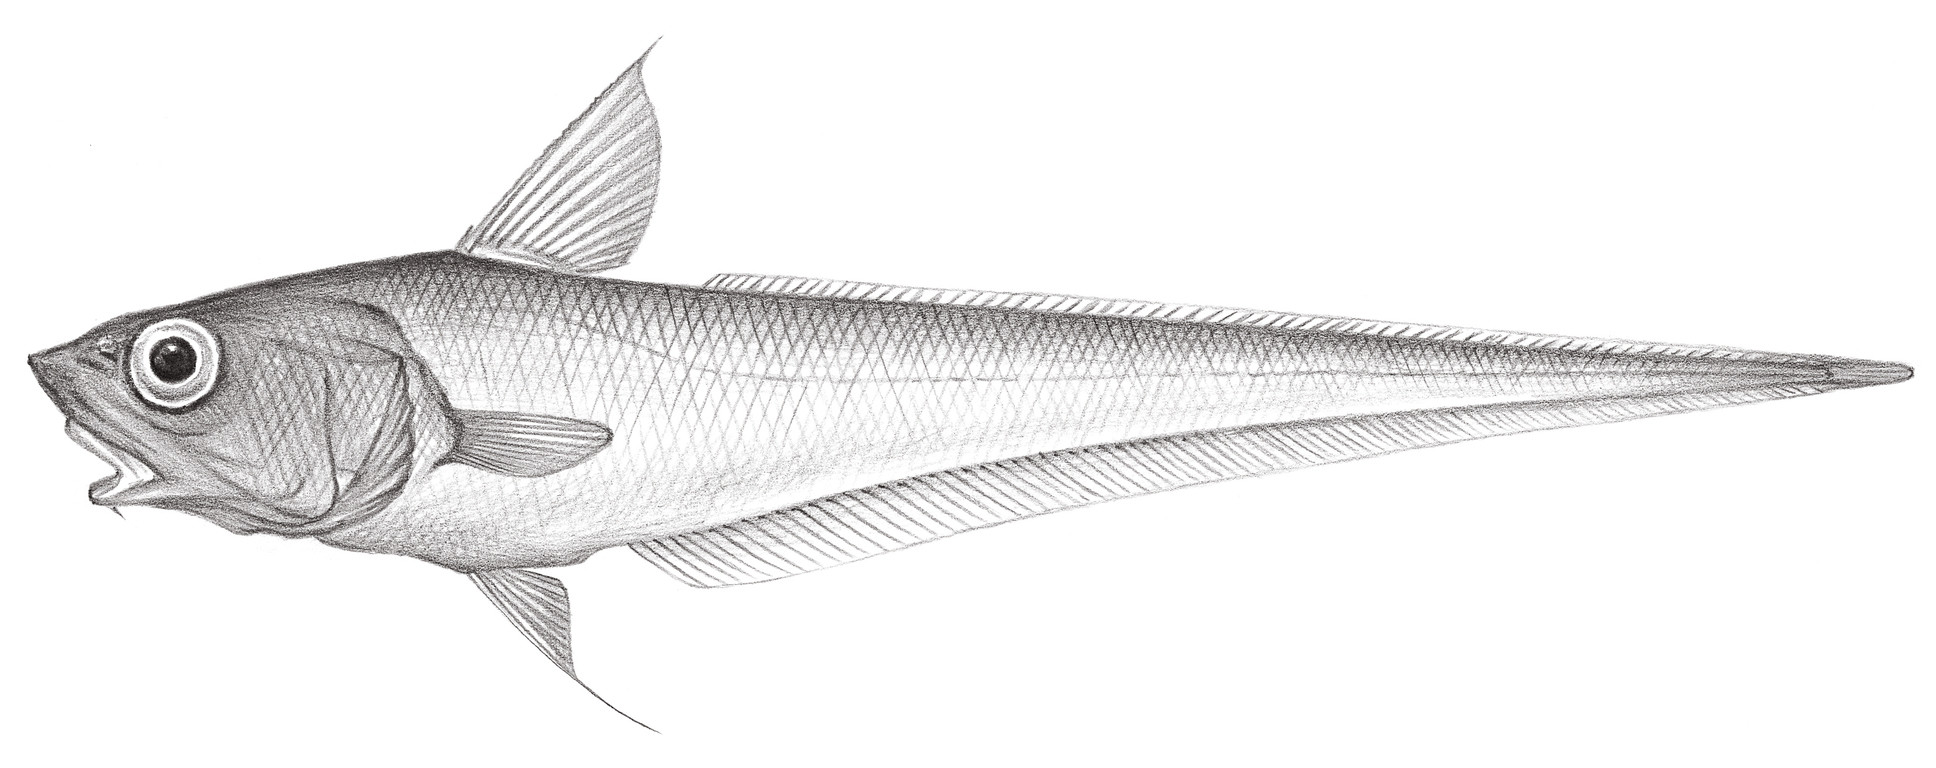 572.	霍氏突吻鱈 Coryphaenoides hoskynii (Alcock, 1890)